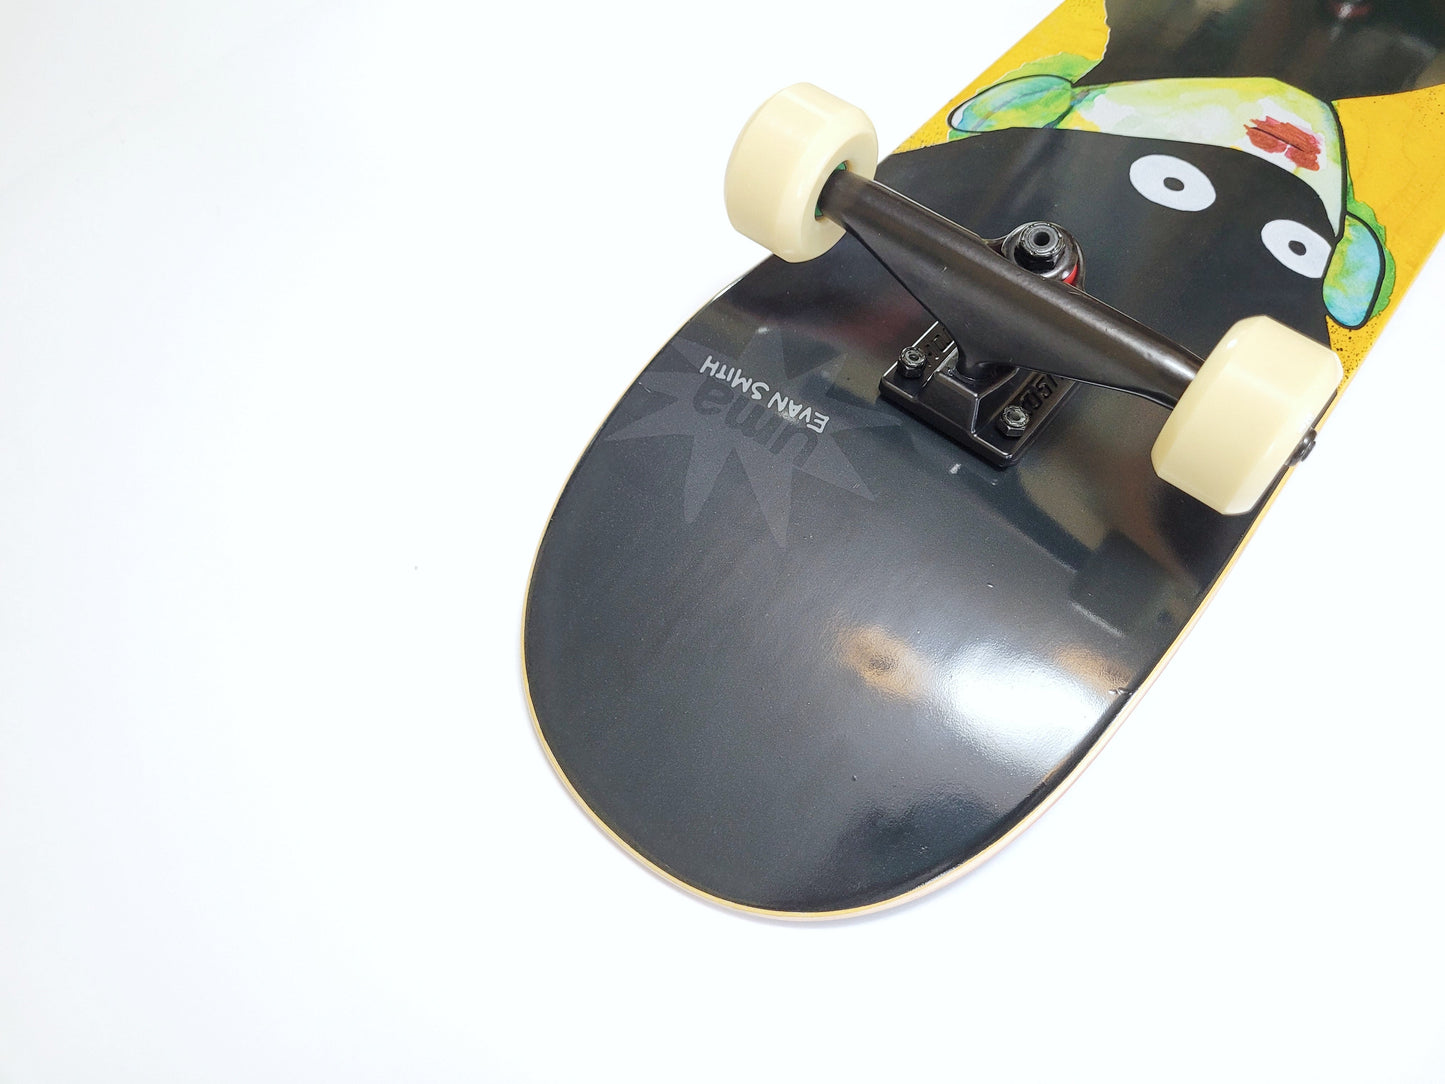 UMA 'Superish Evan' 8.25" skateboard - SkatebruhSG